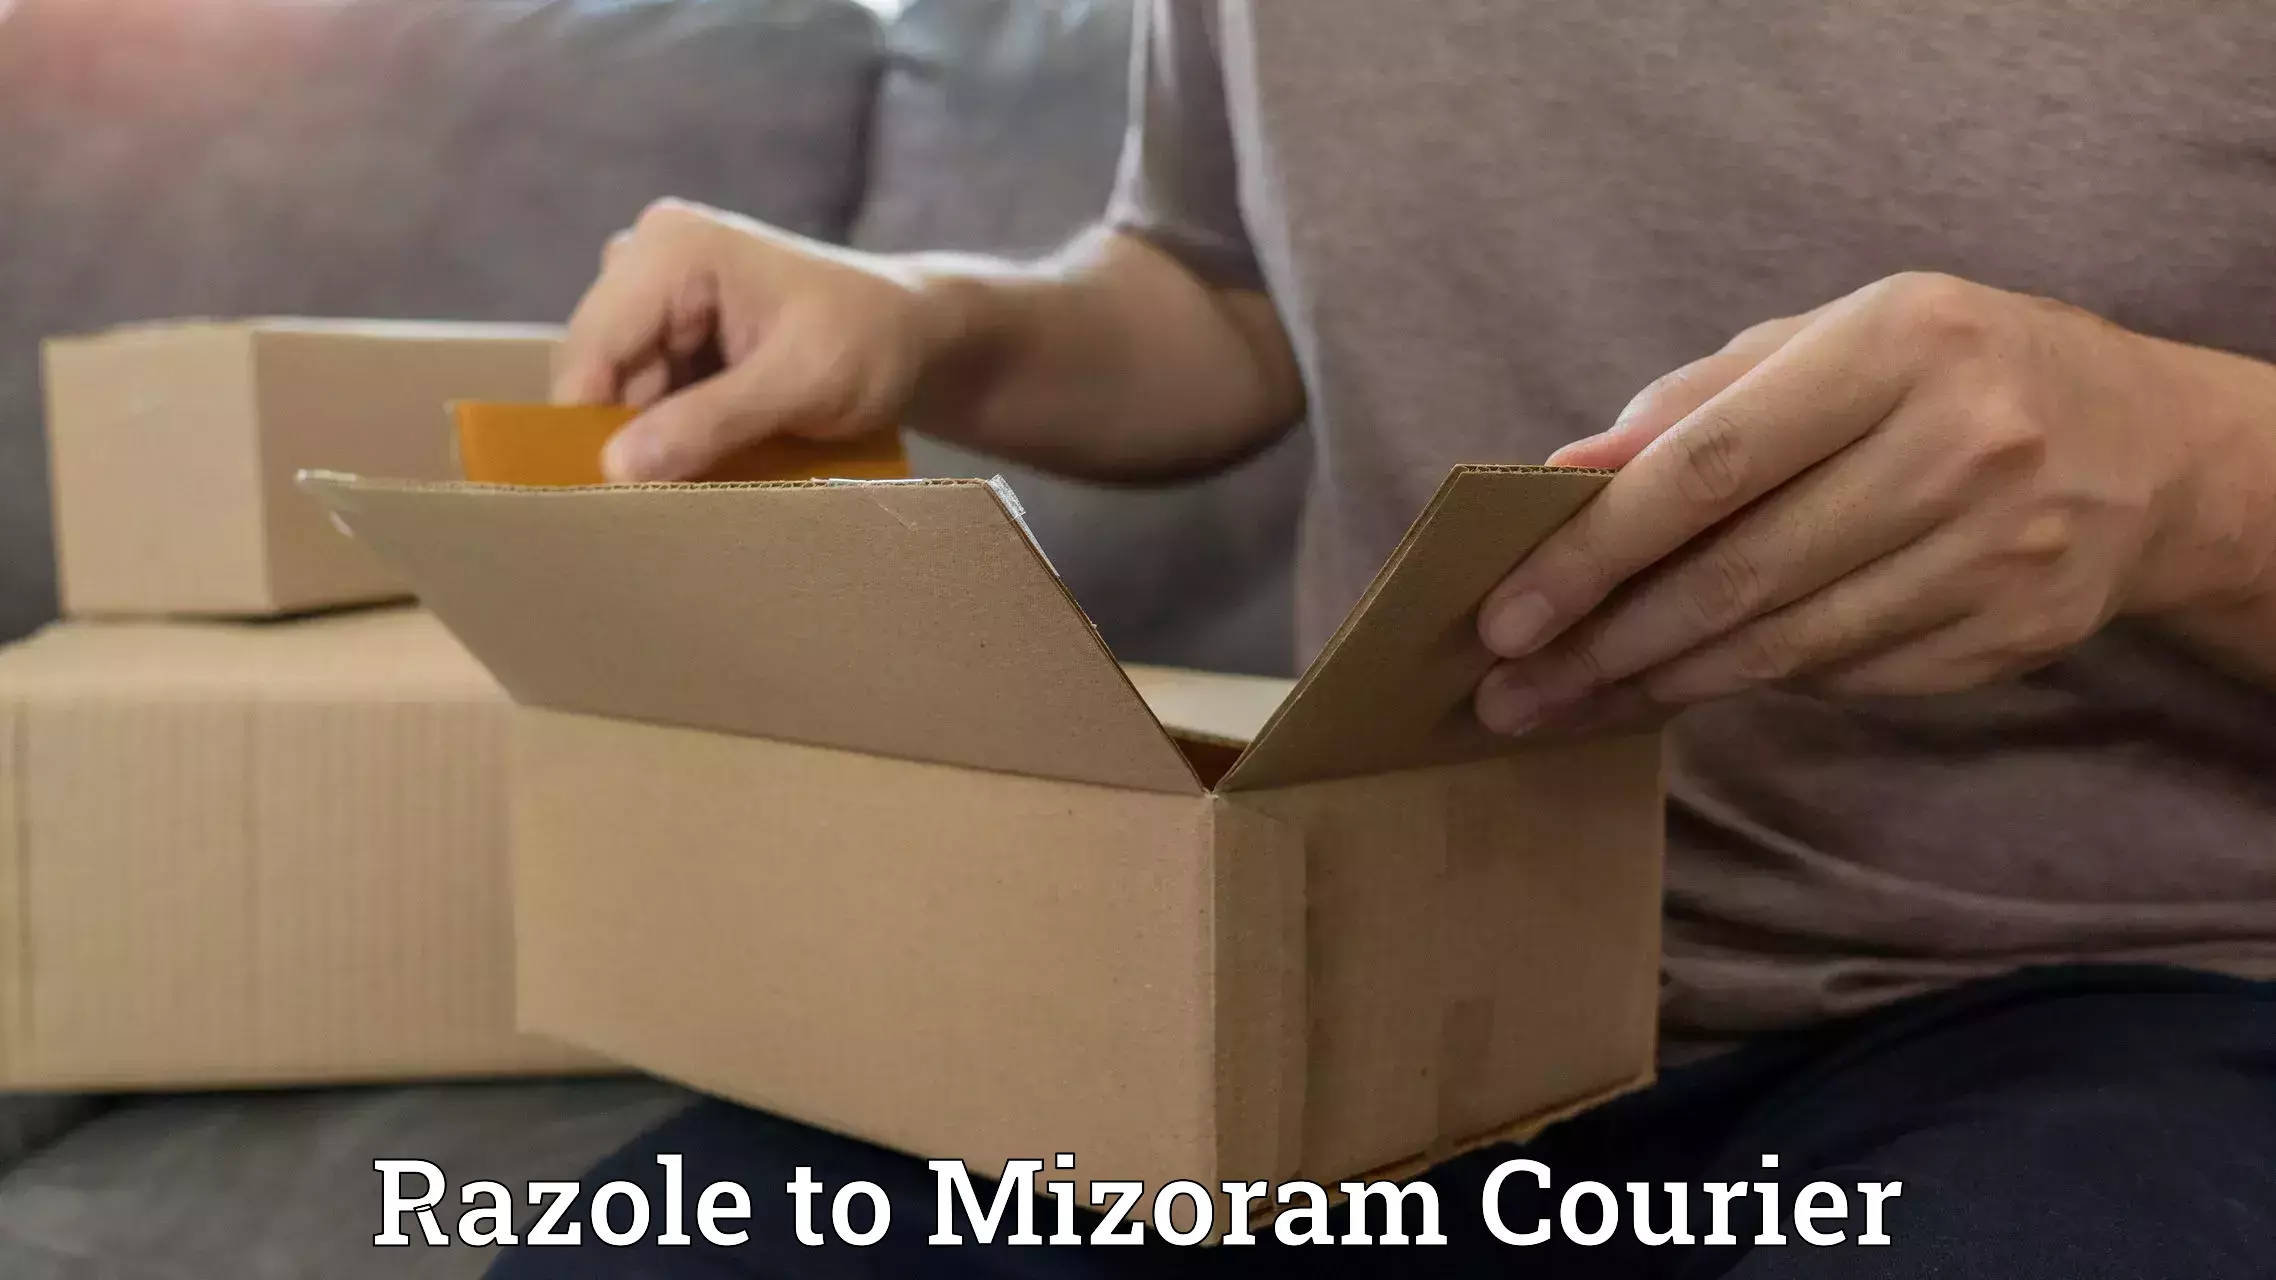 Logistics service provider Razole to Mizoram